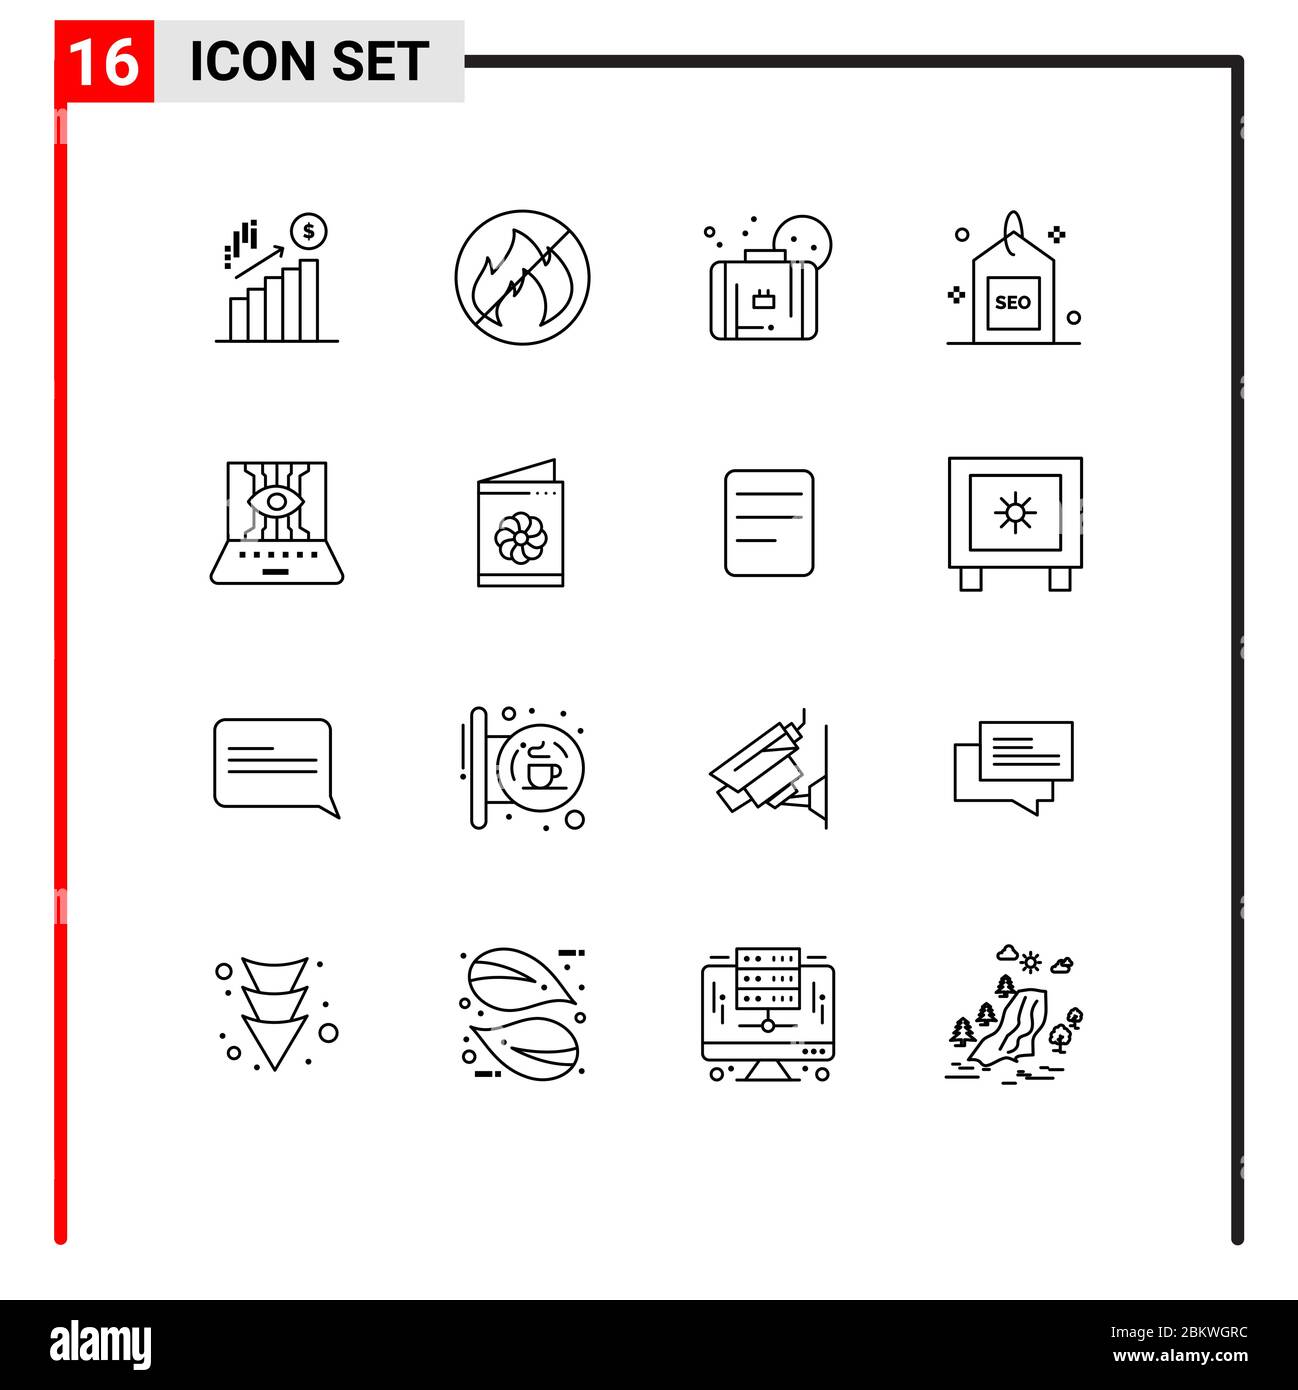 Pack d'icônes vectorielles de 16 symboles et signes de ligne pour les sciences informatiques, seo, été, recherche, supports modifiables éléments de conception vectorielle Illustration de Vecteur